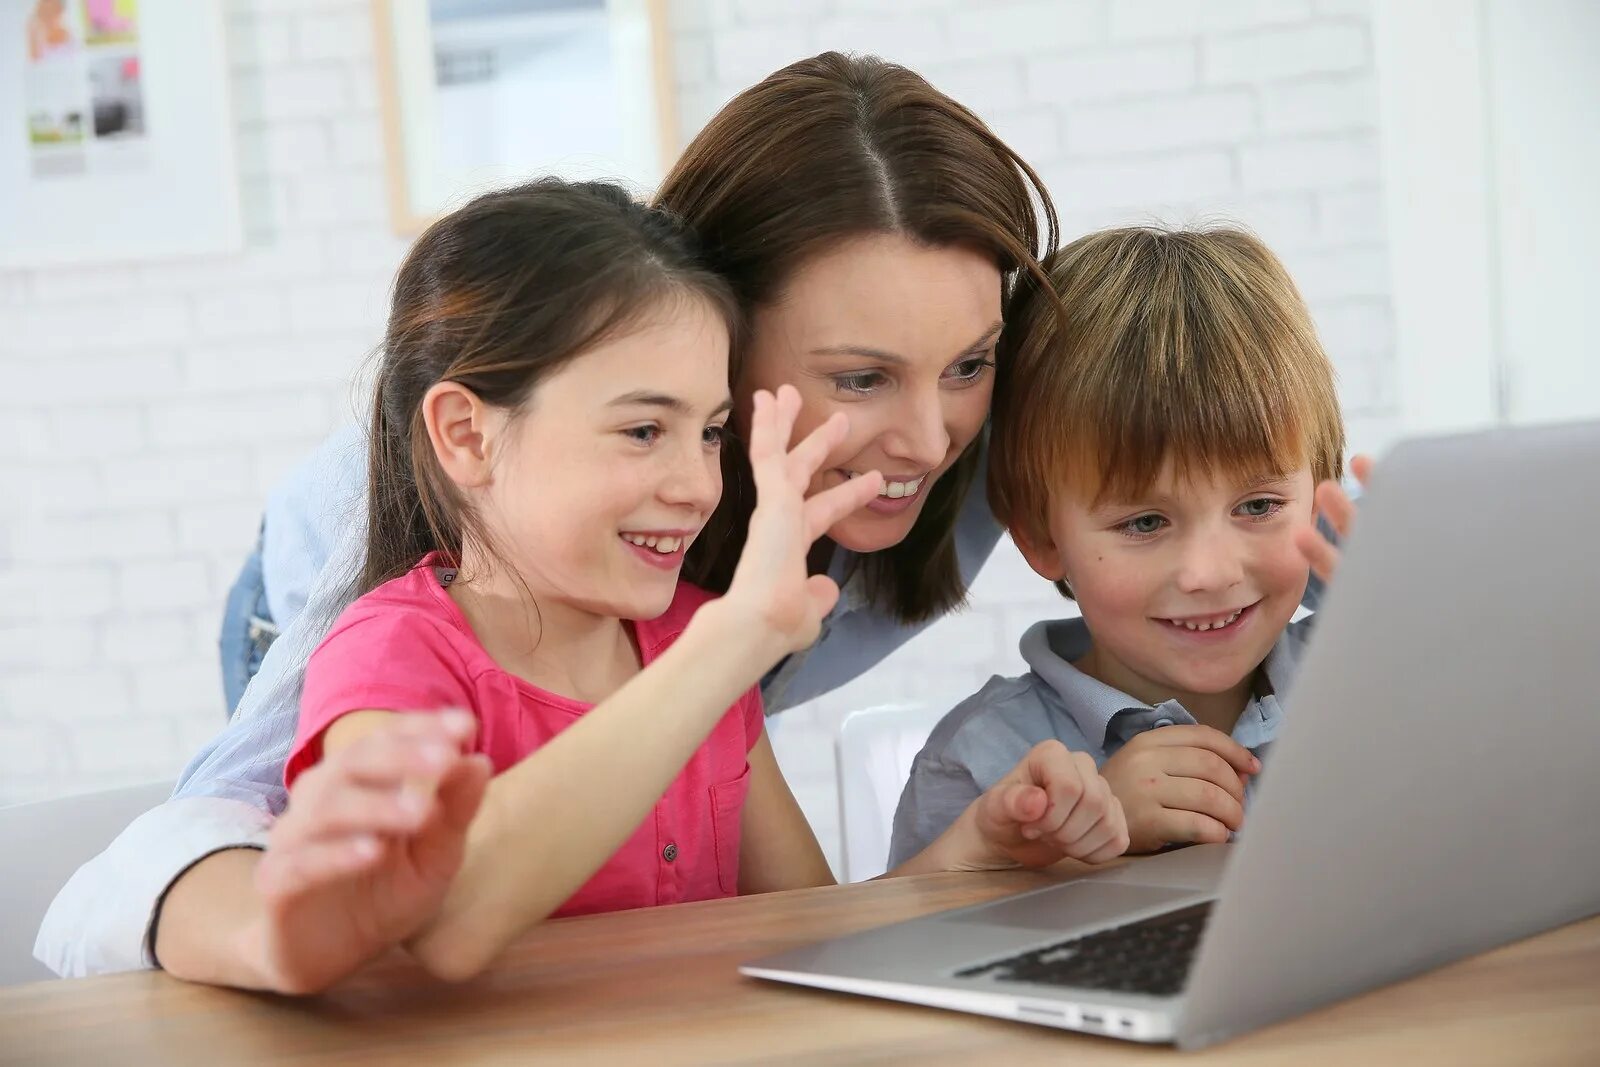 Content school. Компьютер для детей. Общение детей. Детям об интернете. Ребенок за компьютером.